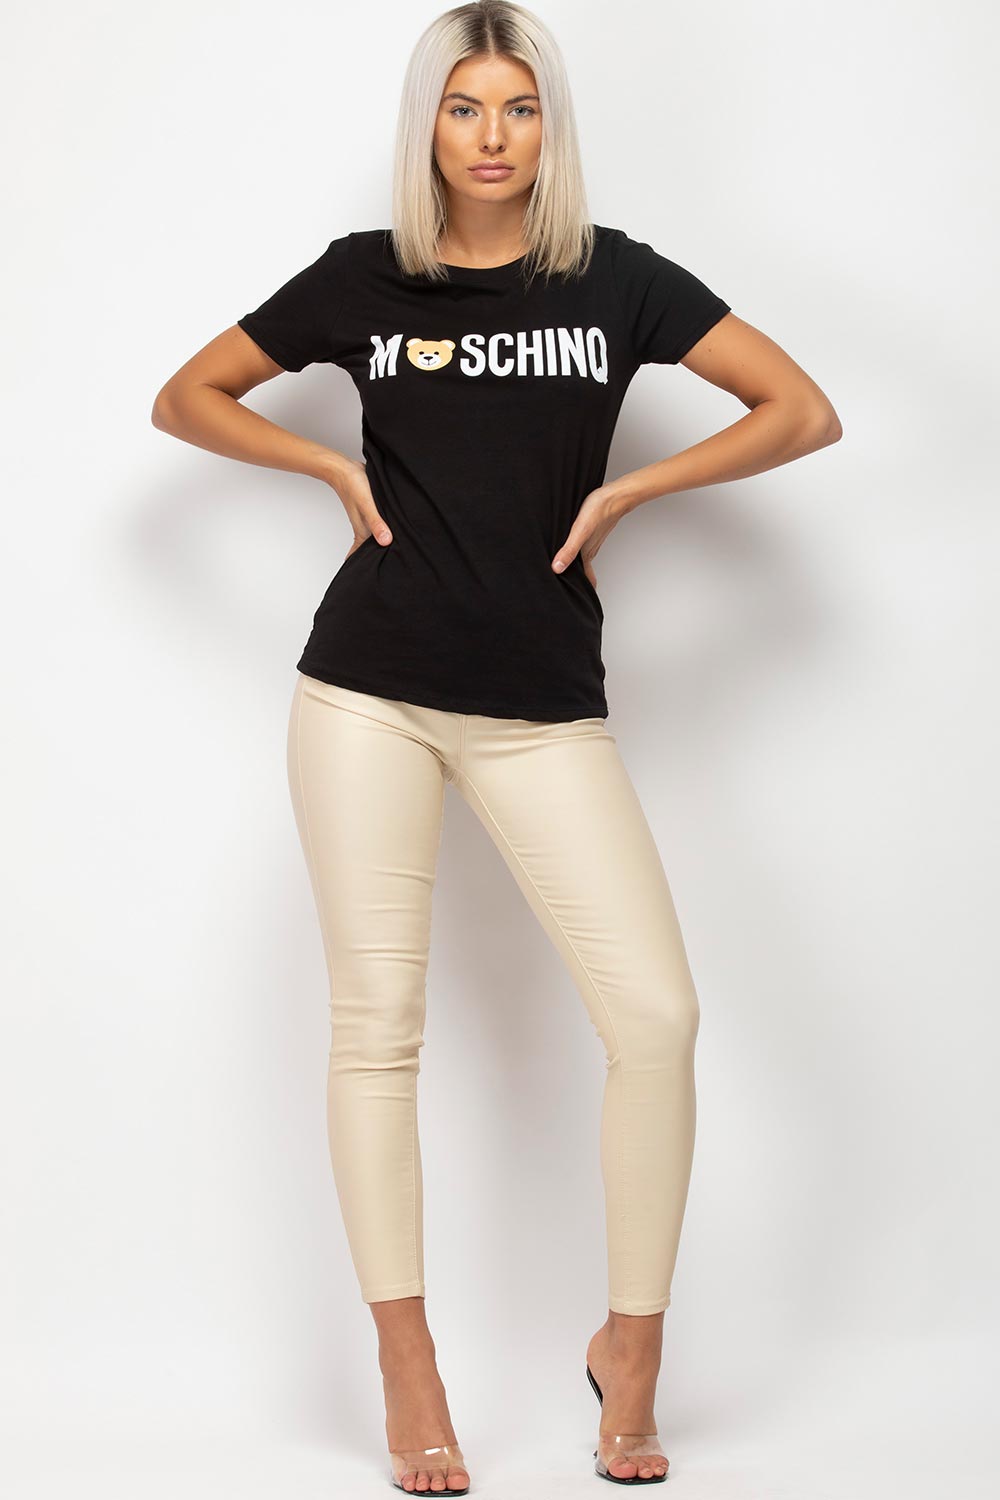 Womens Black Moschino Inspired T Shirt 